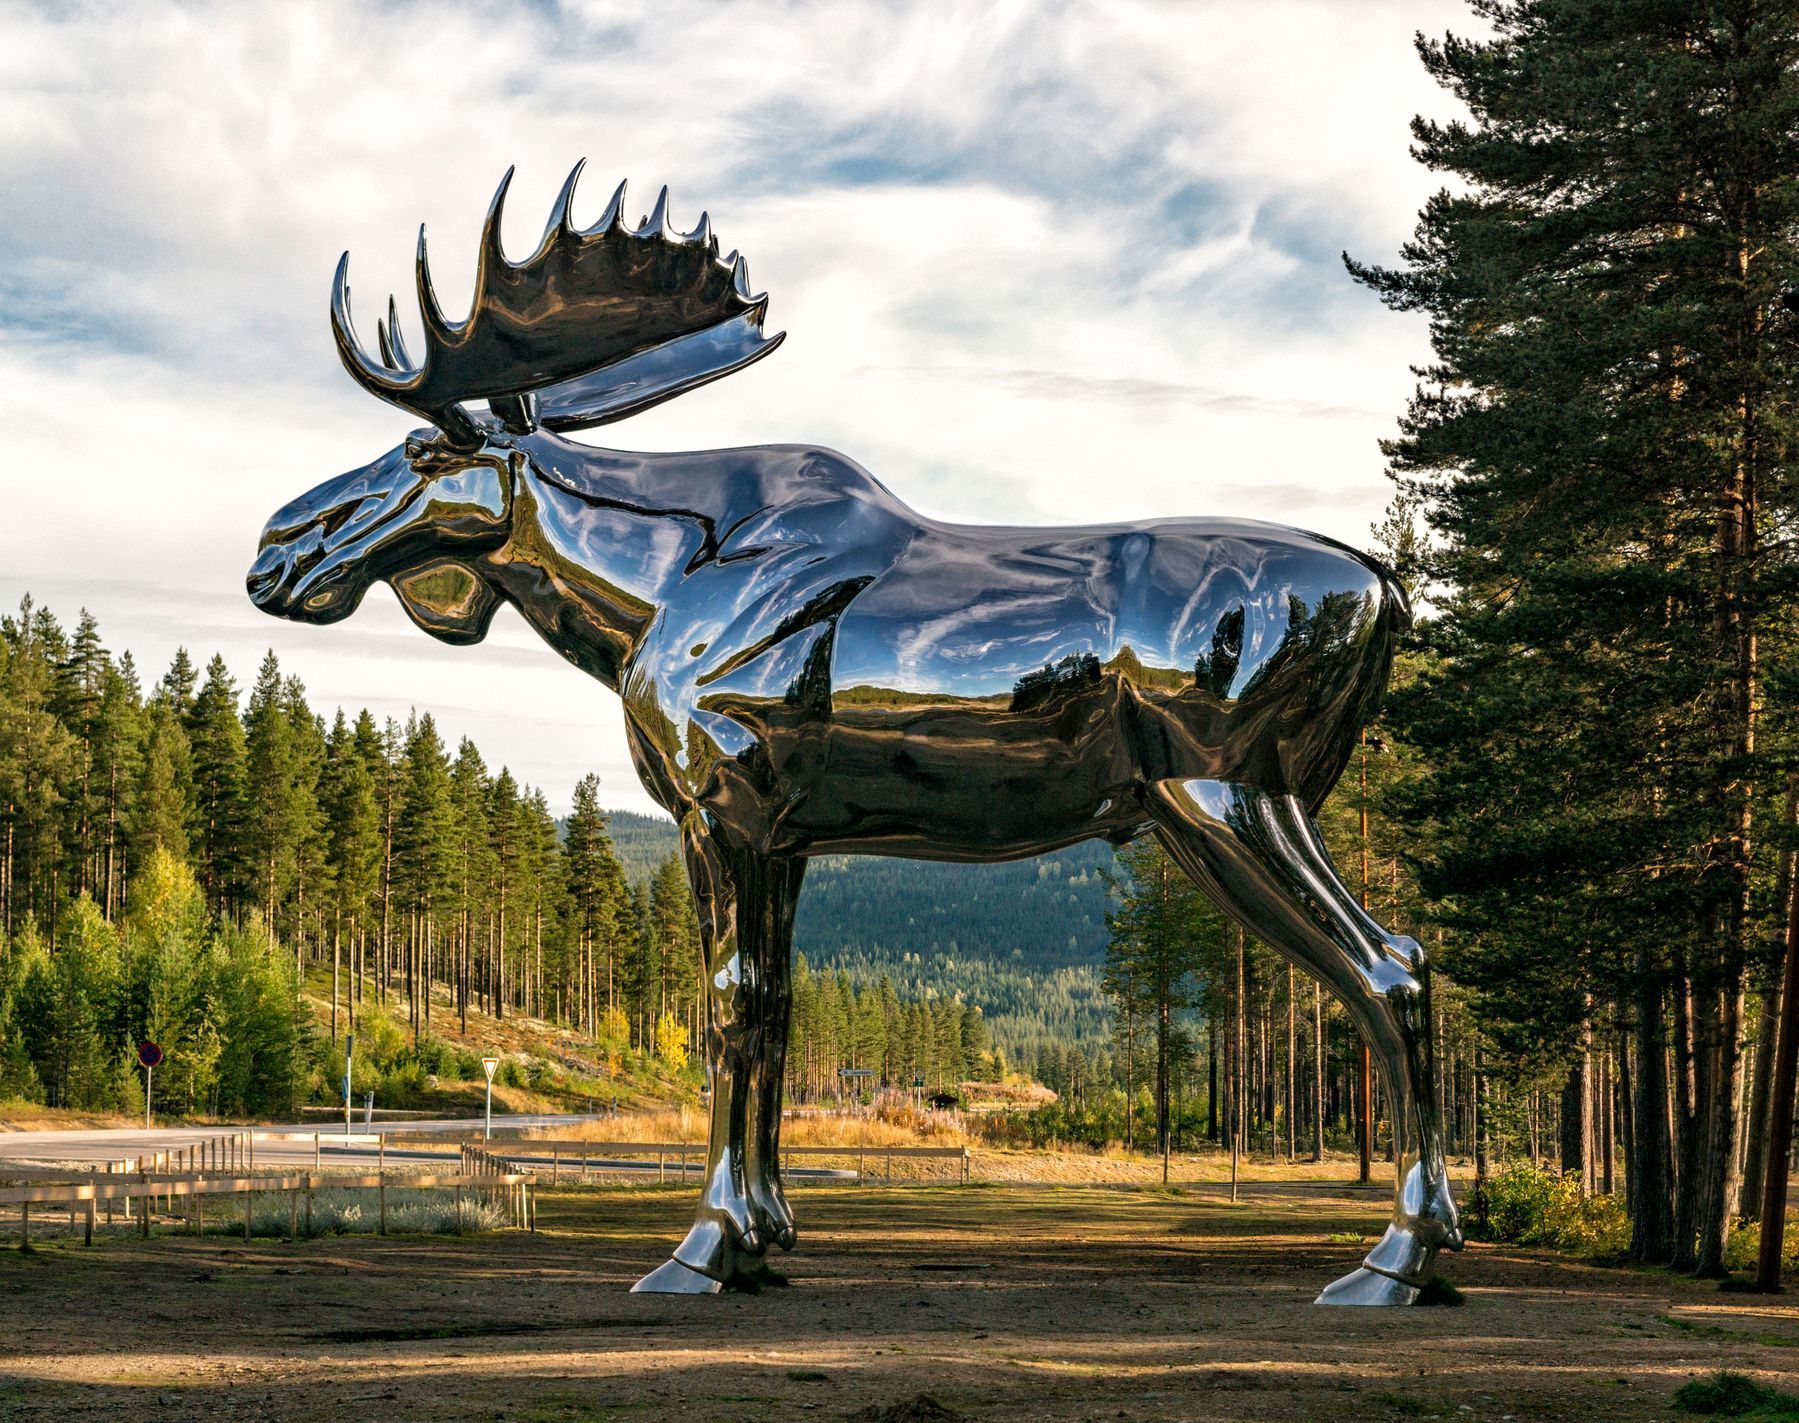 V roce 2015 se stal největší sochou losa na světě nerezový Storelgen, který se nachází v Norsku.